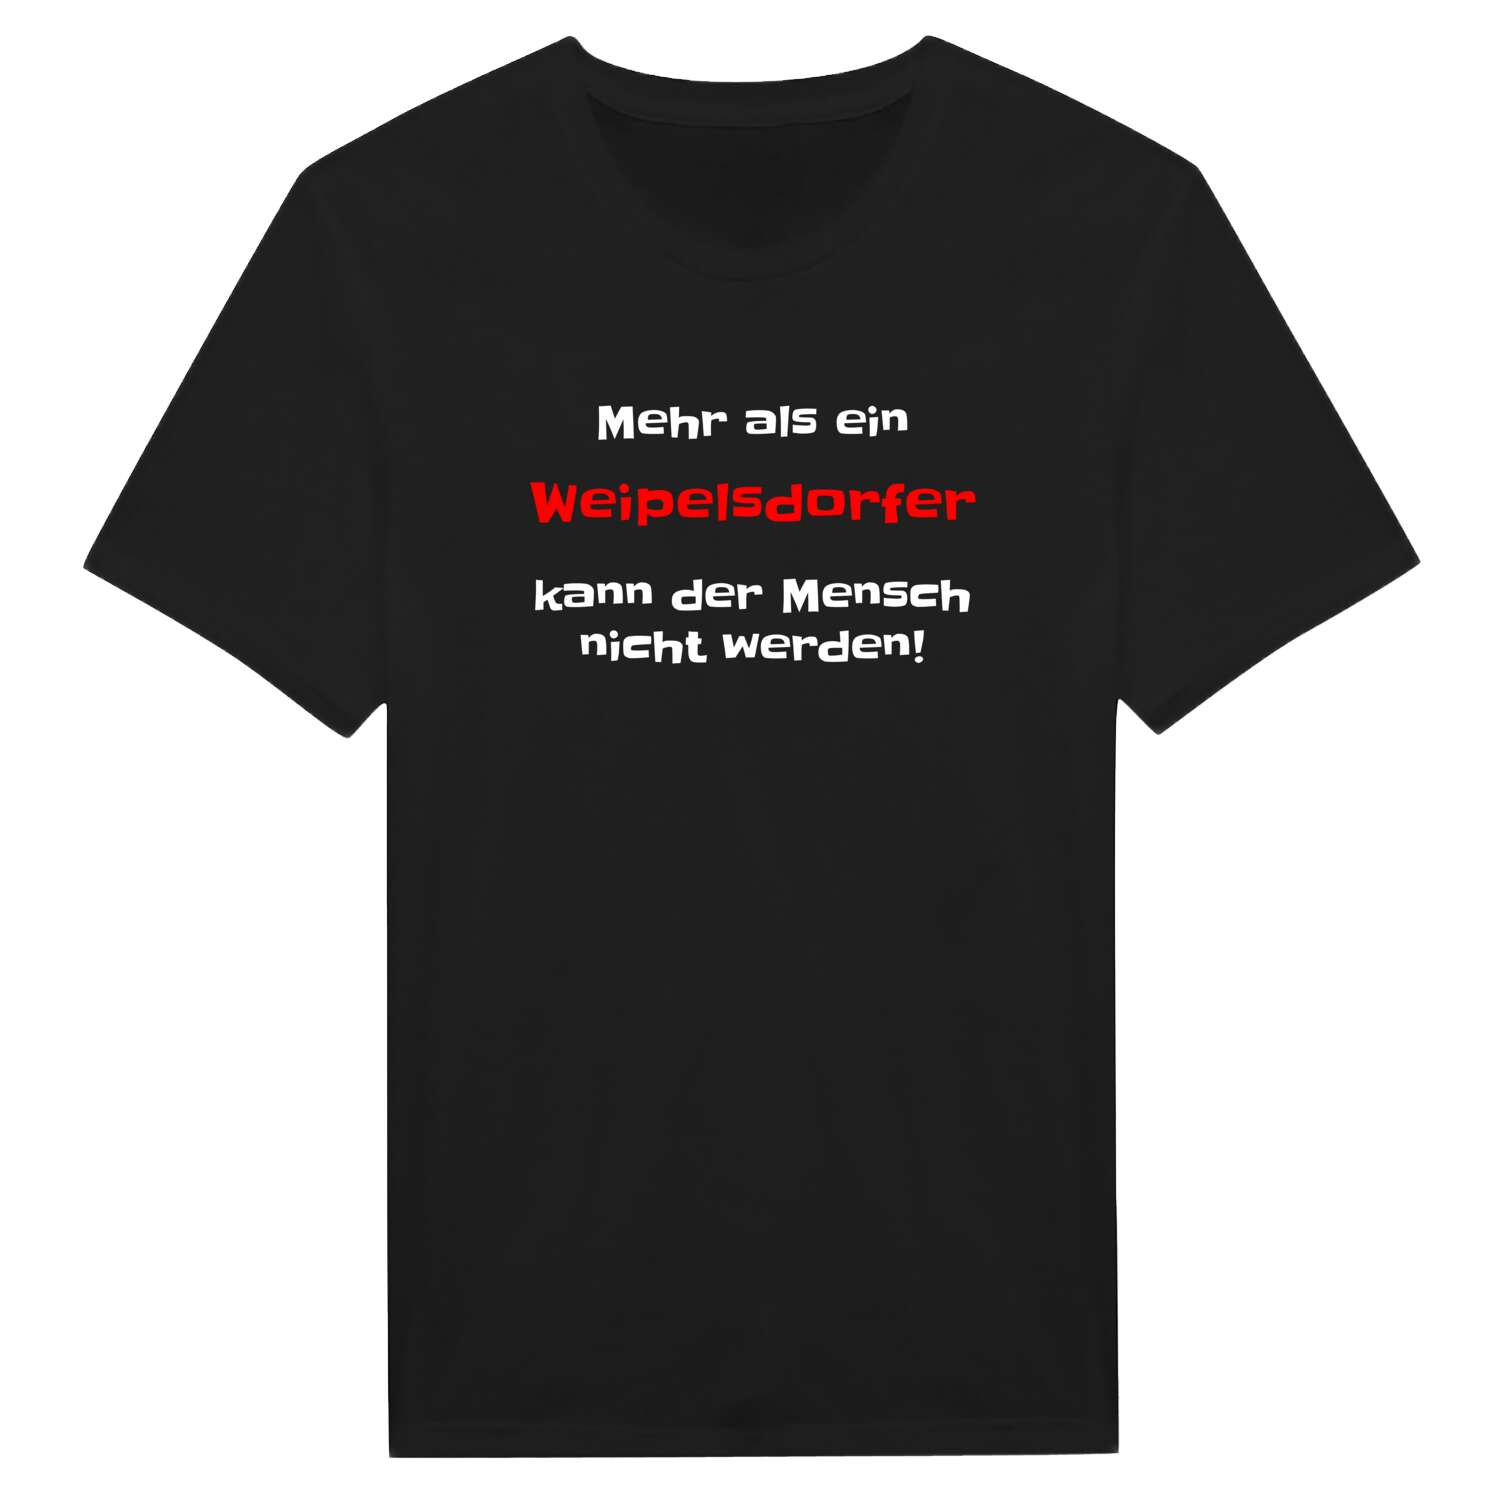 Weipelsdorf T-Shirt »Mehr als ein«